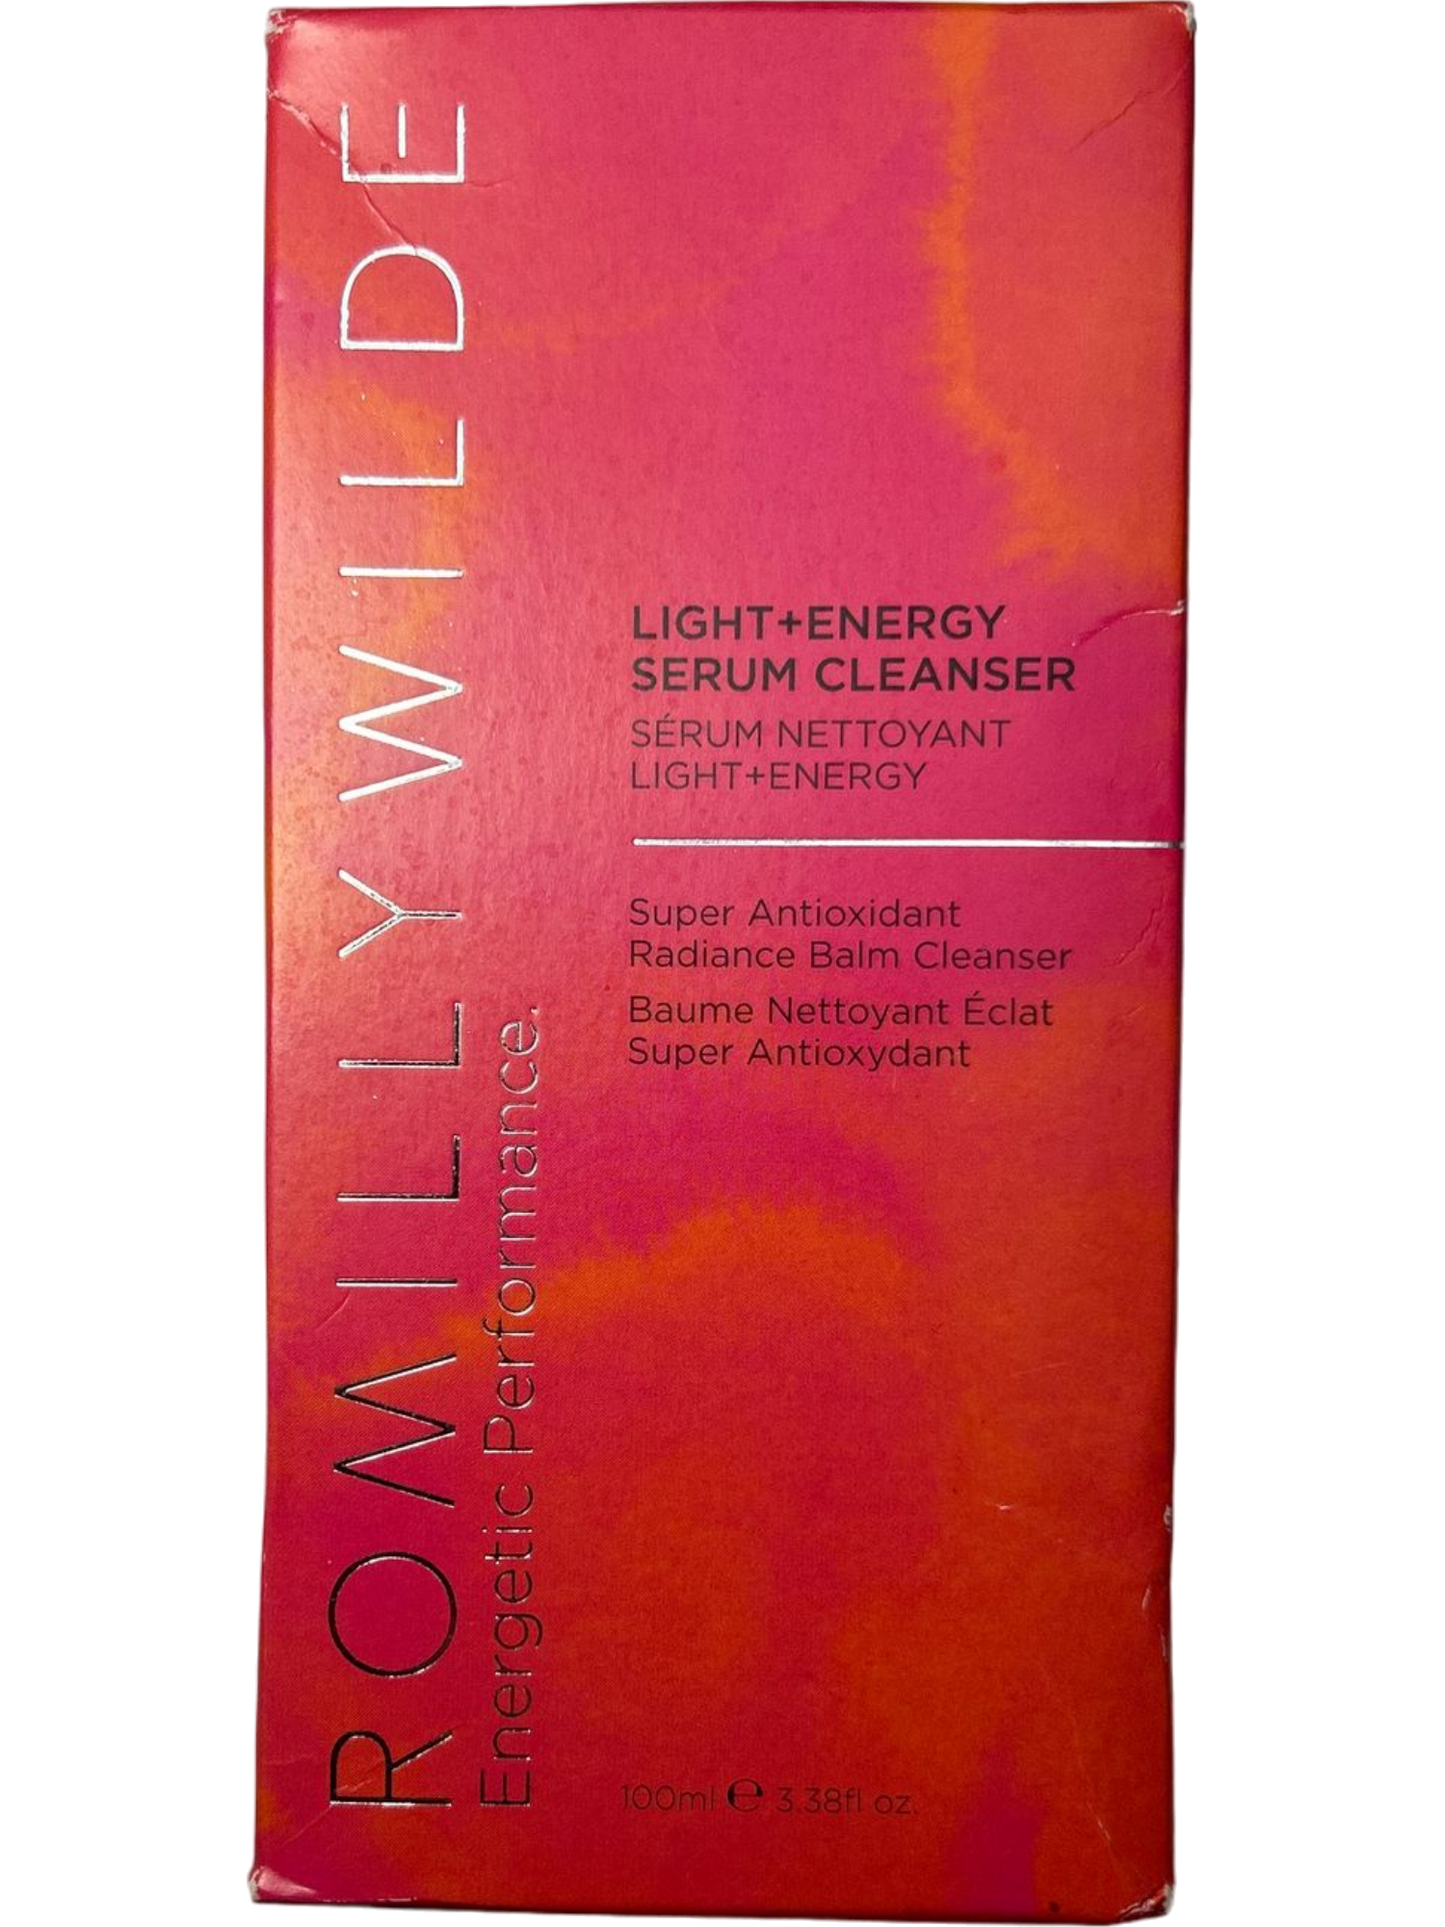 ROMILLY WILDE Light + Energy Serum Cleanser Super Antioxidant 100ml